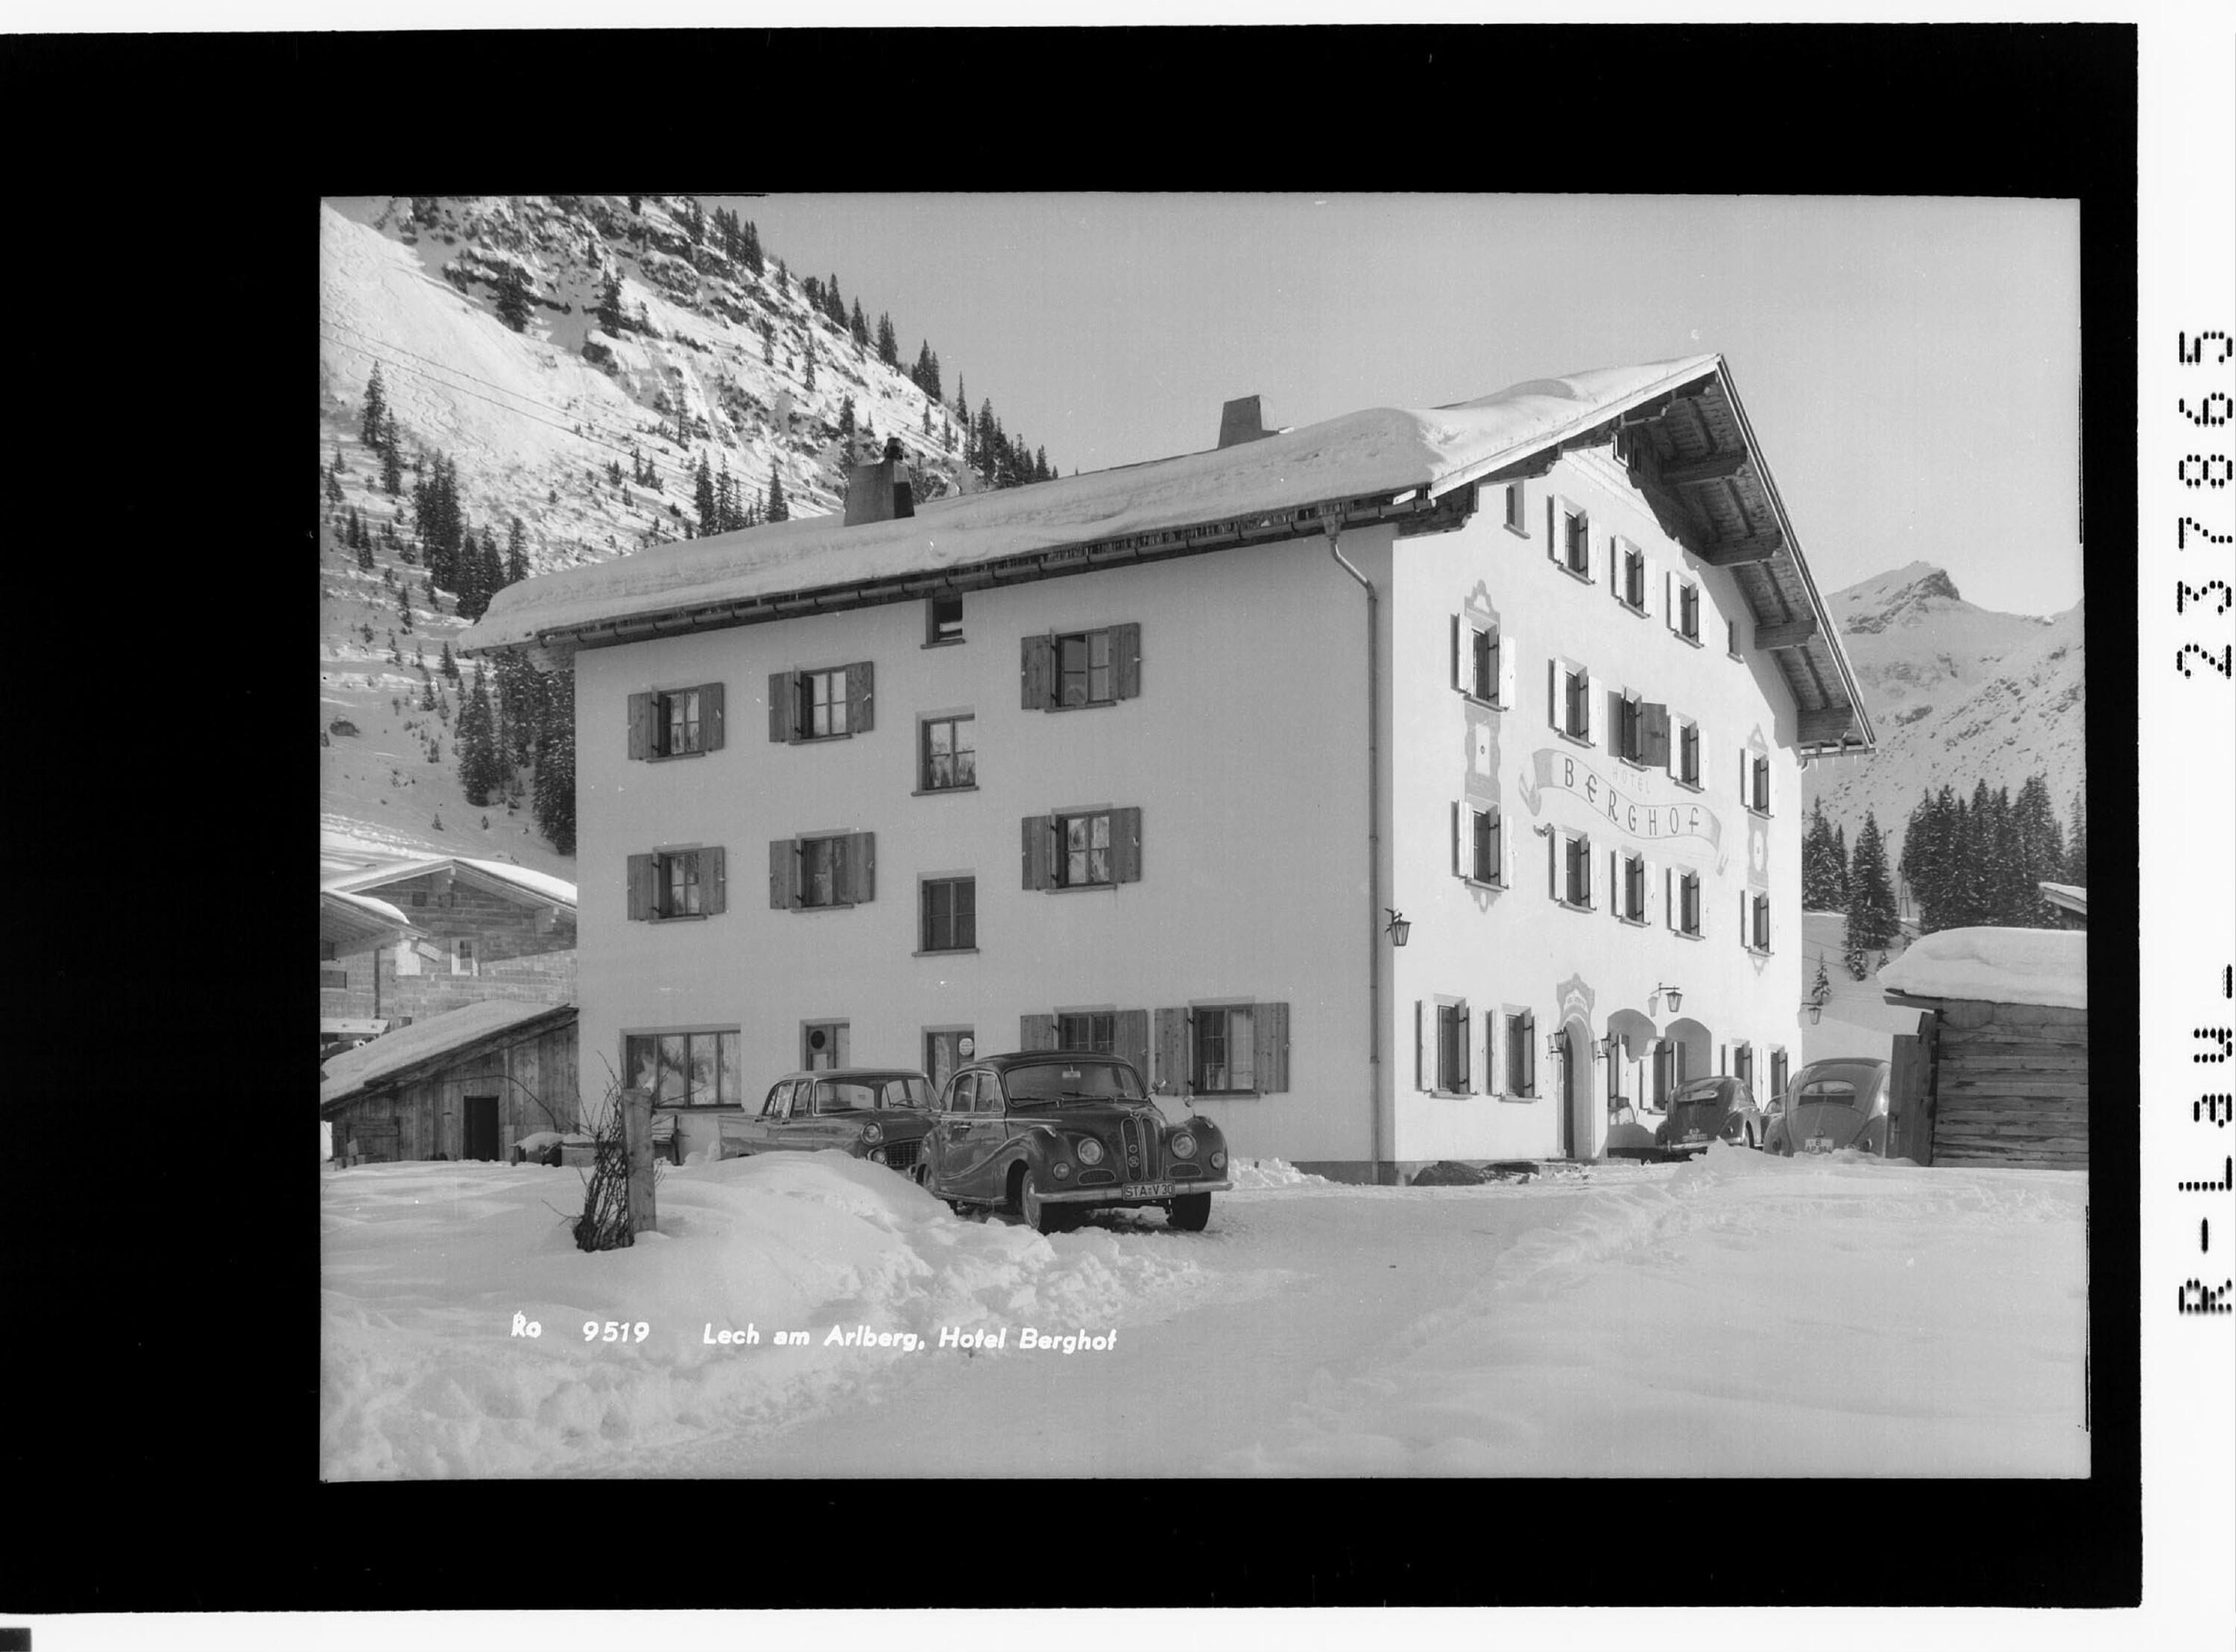 Lech am Arlberg / Hotel Berghof></div>


    <hr>
    <div class=